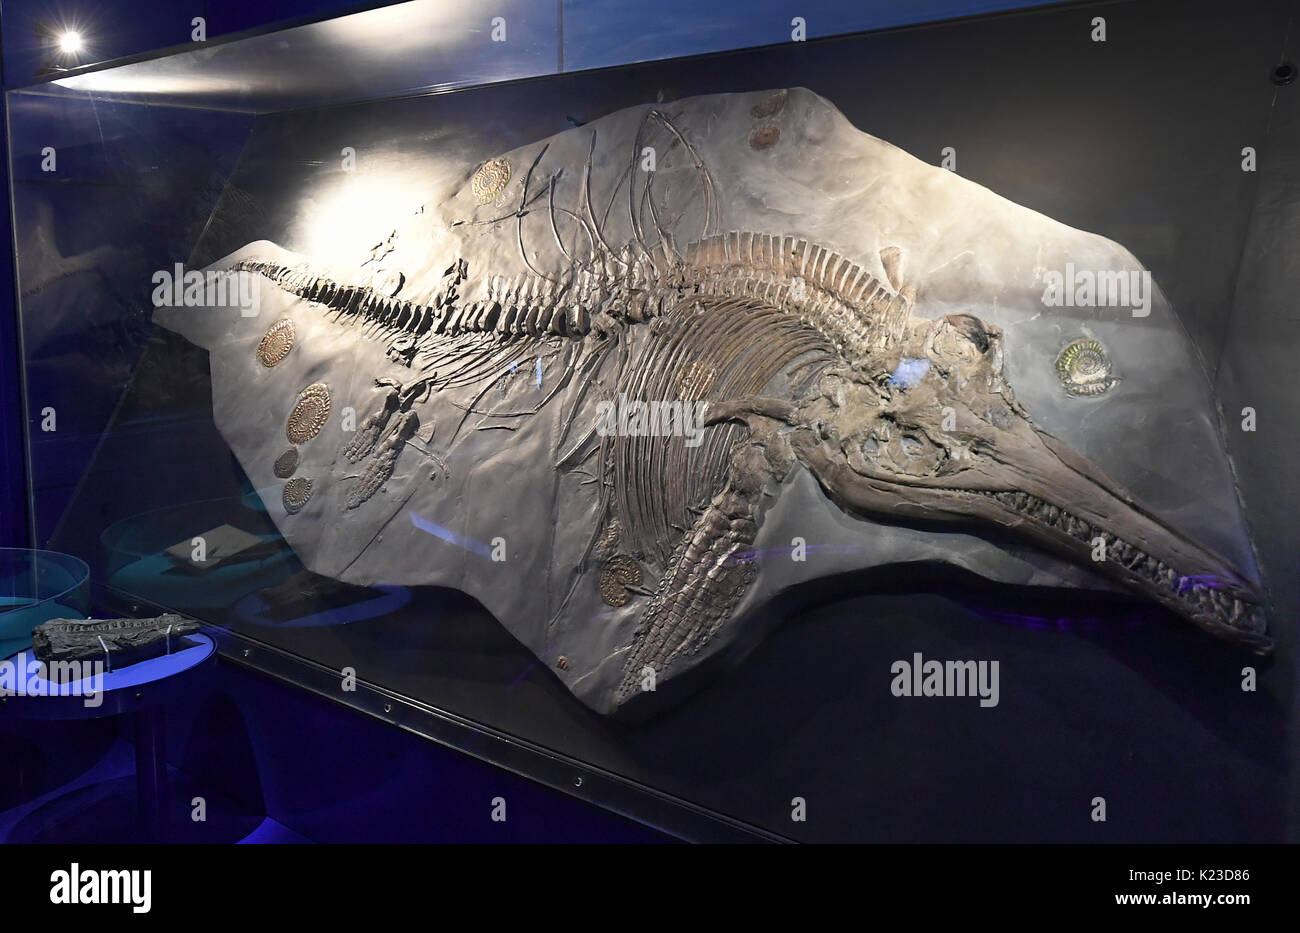 Hannover, Germania. 25 Ago, 2017. Un pari a circa 200 milioni di anni fossilizzato Ichthyosaur è in mostra nel museo regionale di Hannover, Germania, 25 agosto 2017. Lo scienziato ha scoperto un embrione nell'Ichthyosaur femmina. Il fossile è tre per tre-e-mezzo metro di lunghezza. Foto: Holger Hollemann/dpa/Alamy Live News Foto Stock